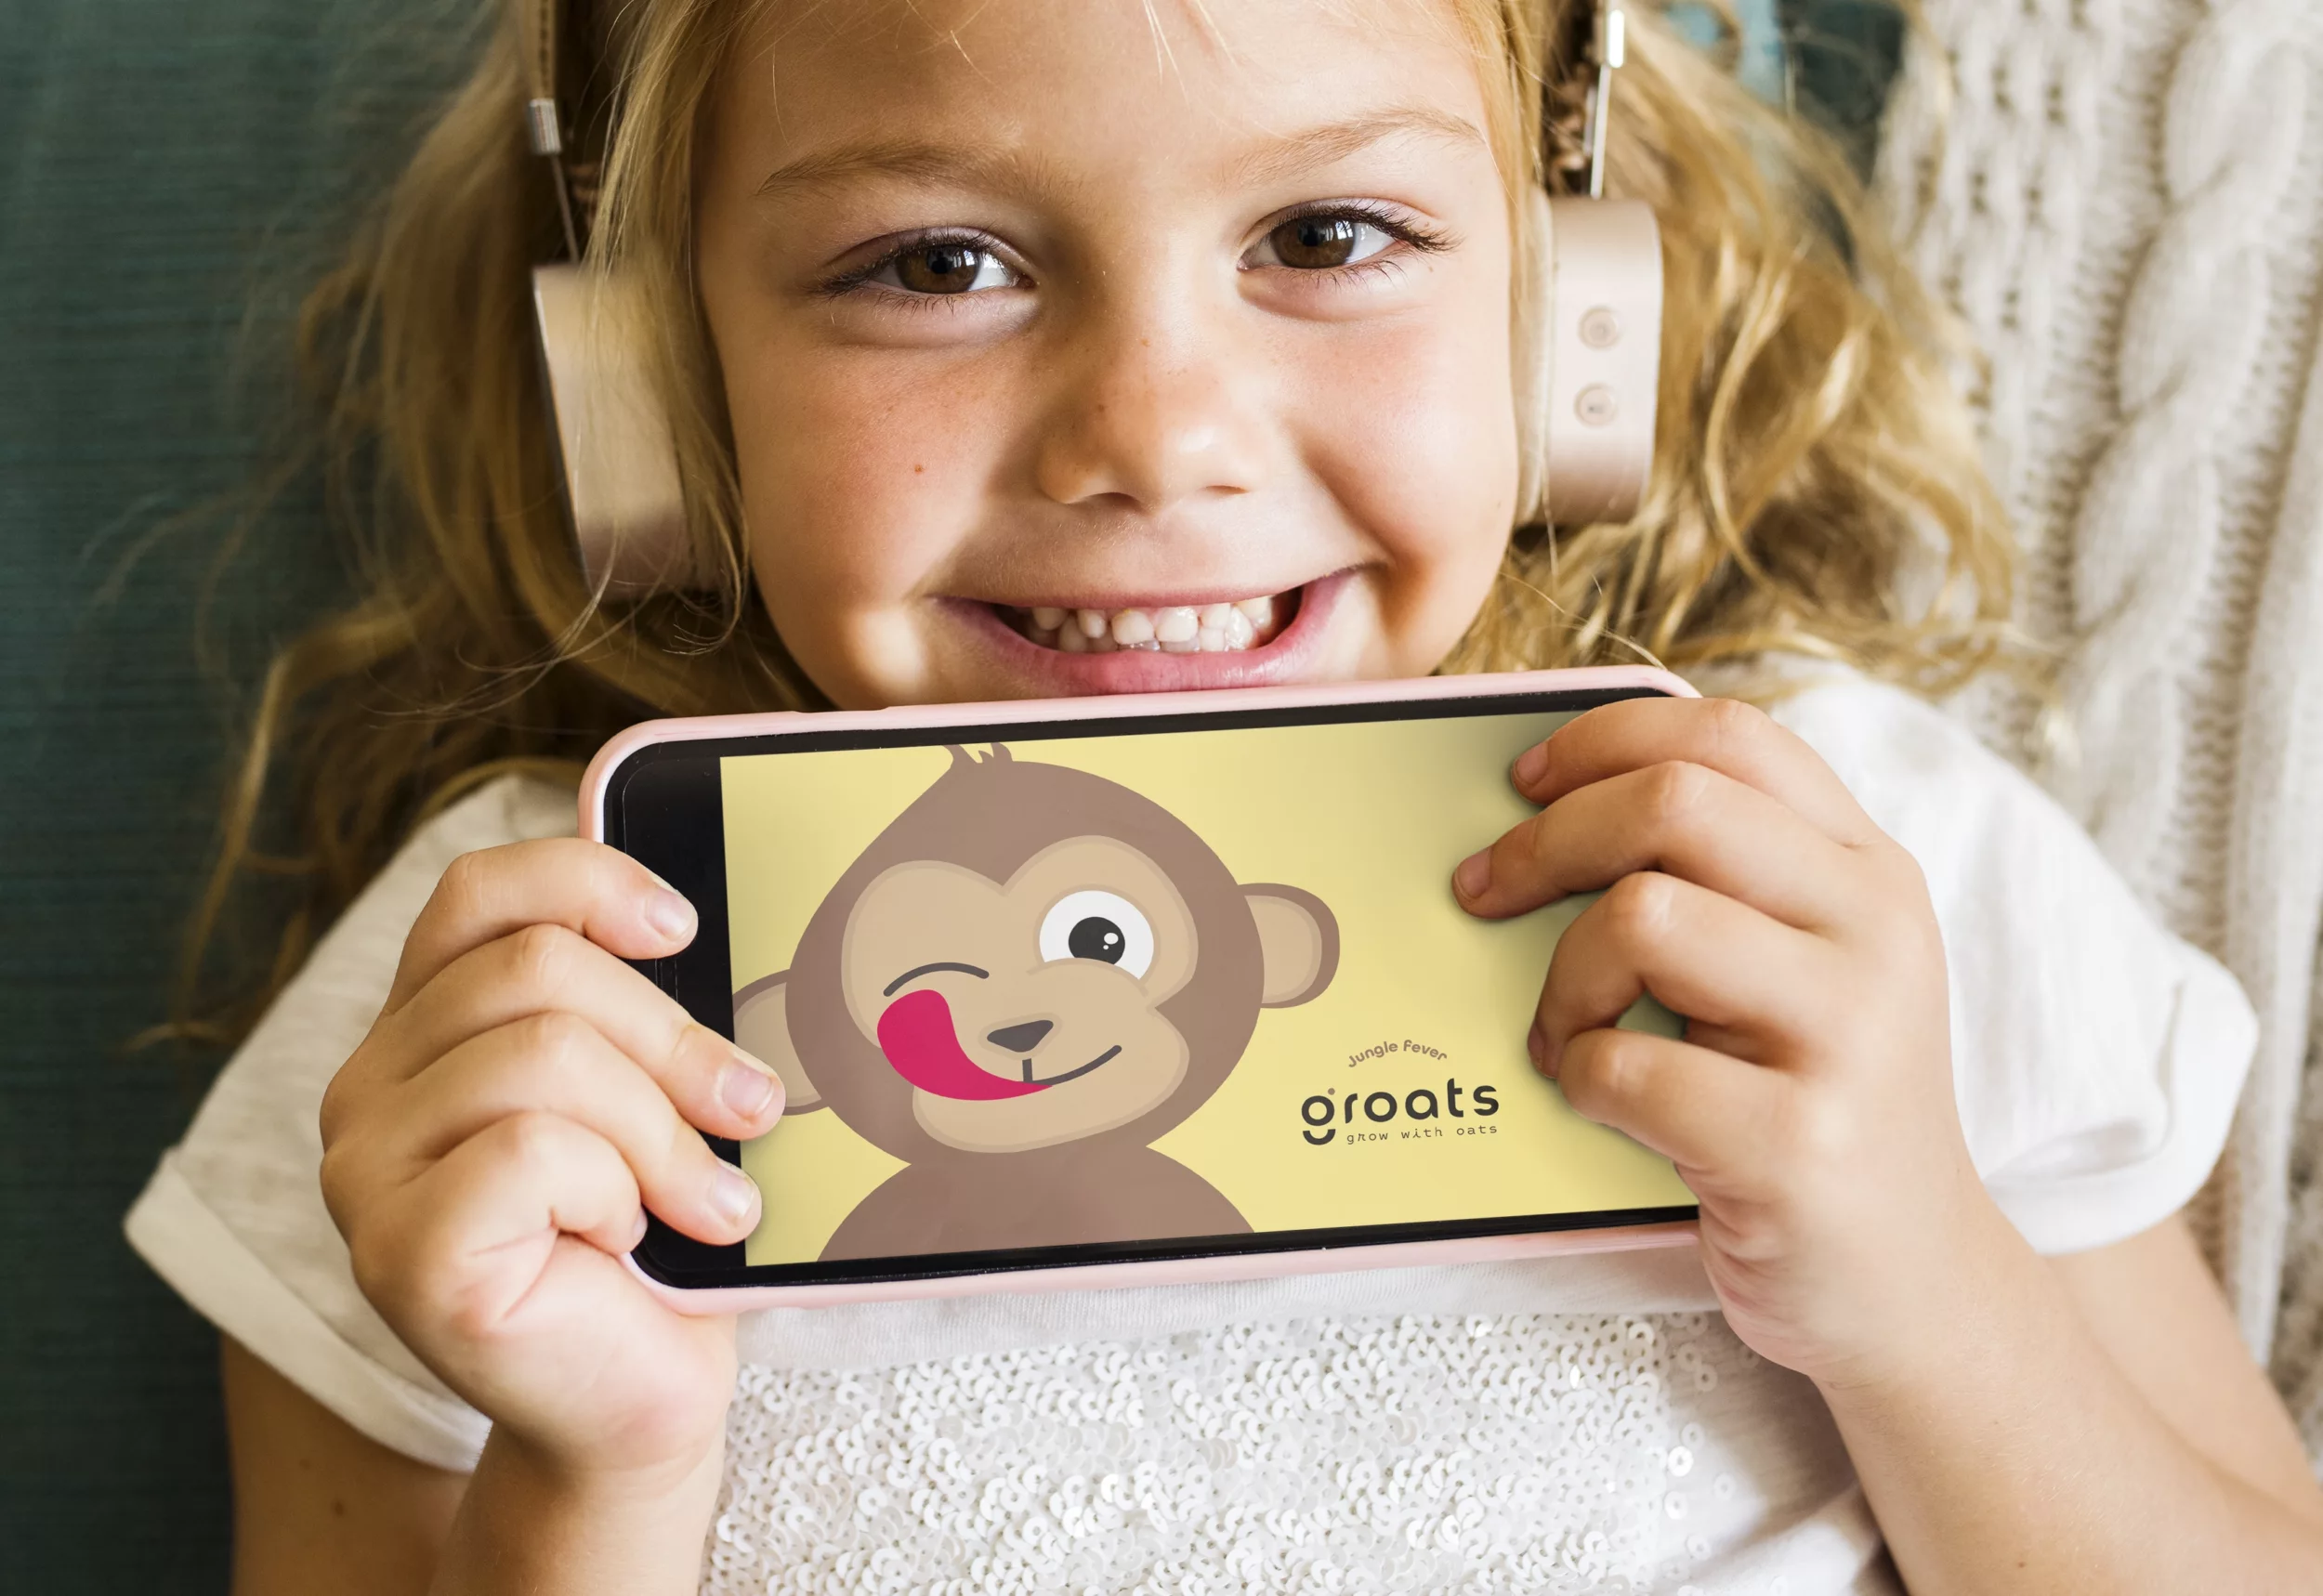 Visual van een vrolijk kindje met Groats op de GSM.